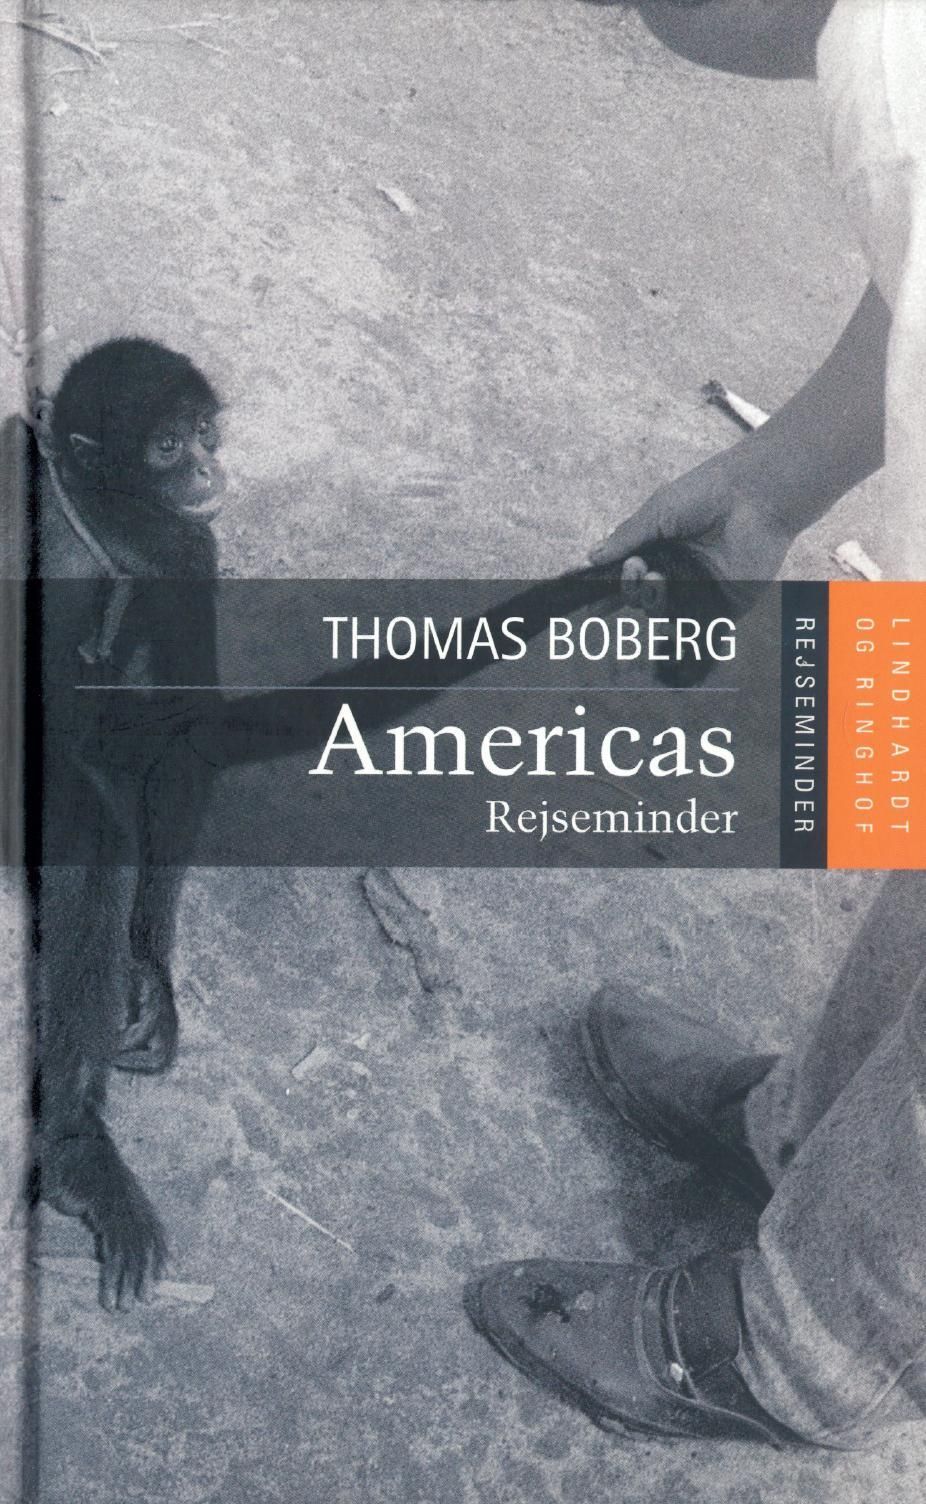 Americas - rejseminder, ljudbok av Thomas Boberg